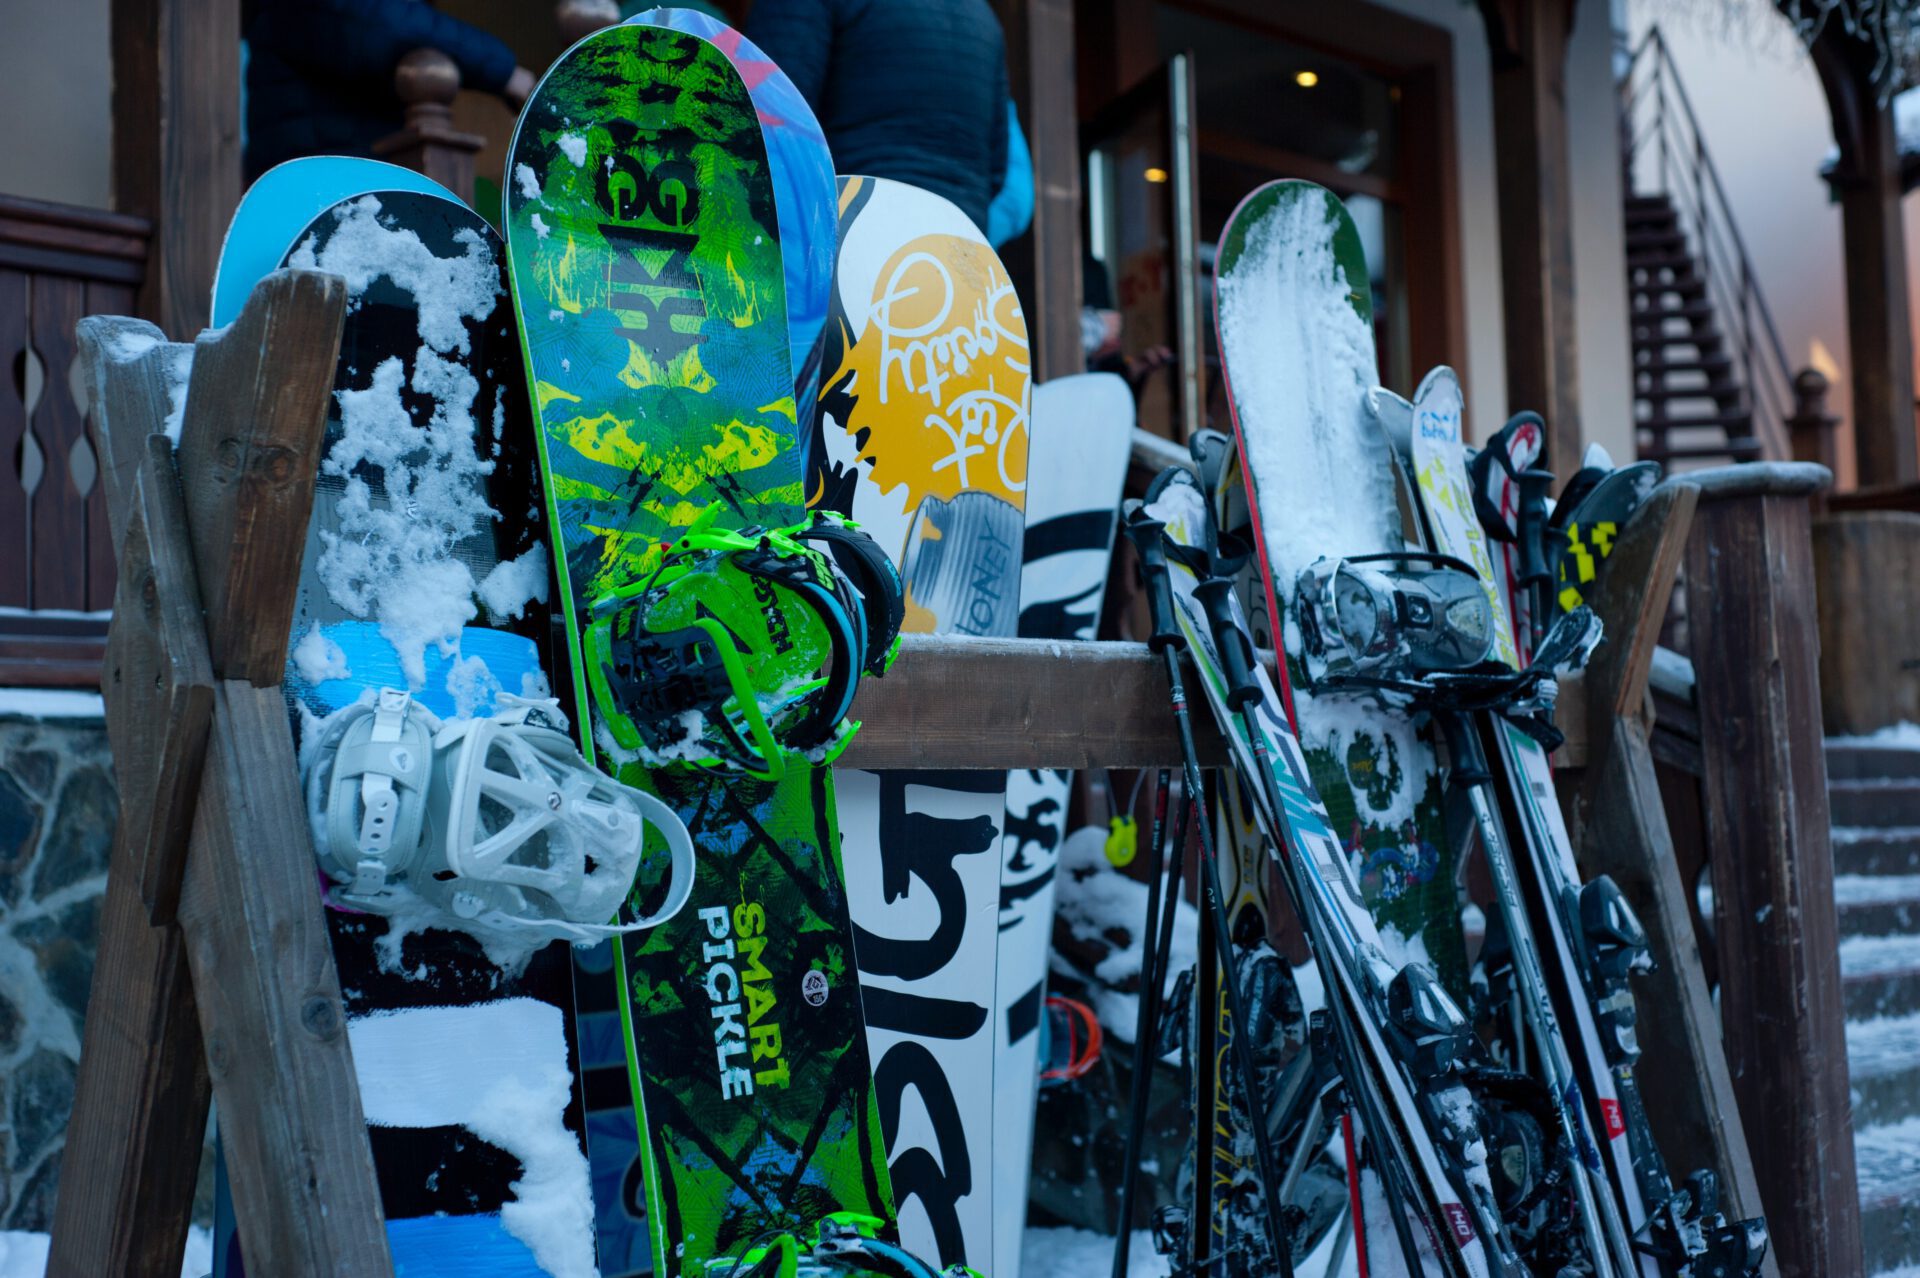 Aprés-ski Themafeest snowboard